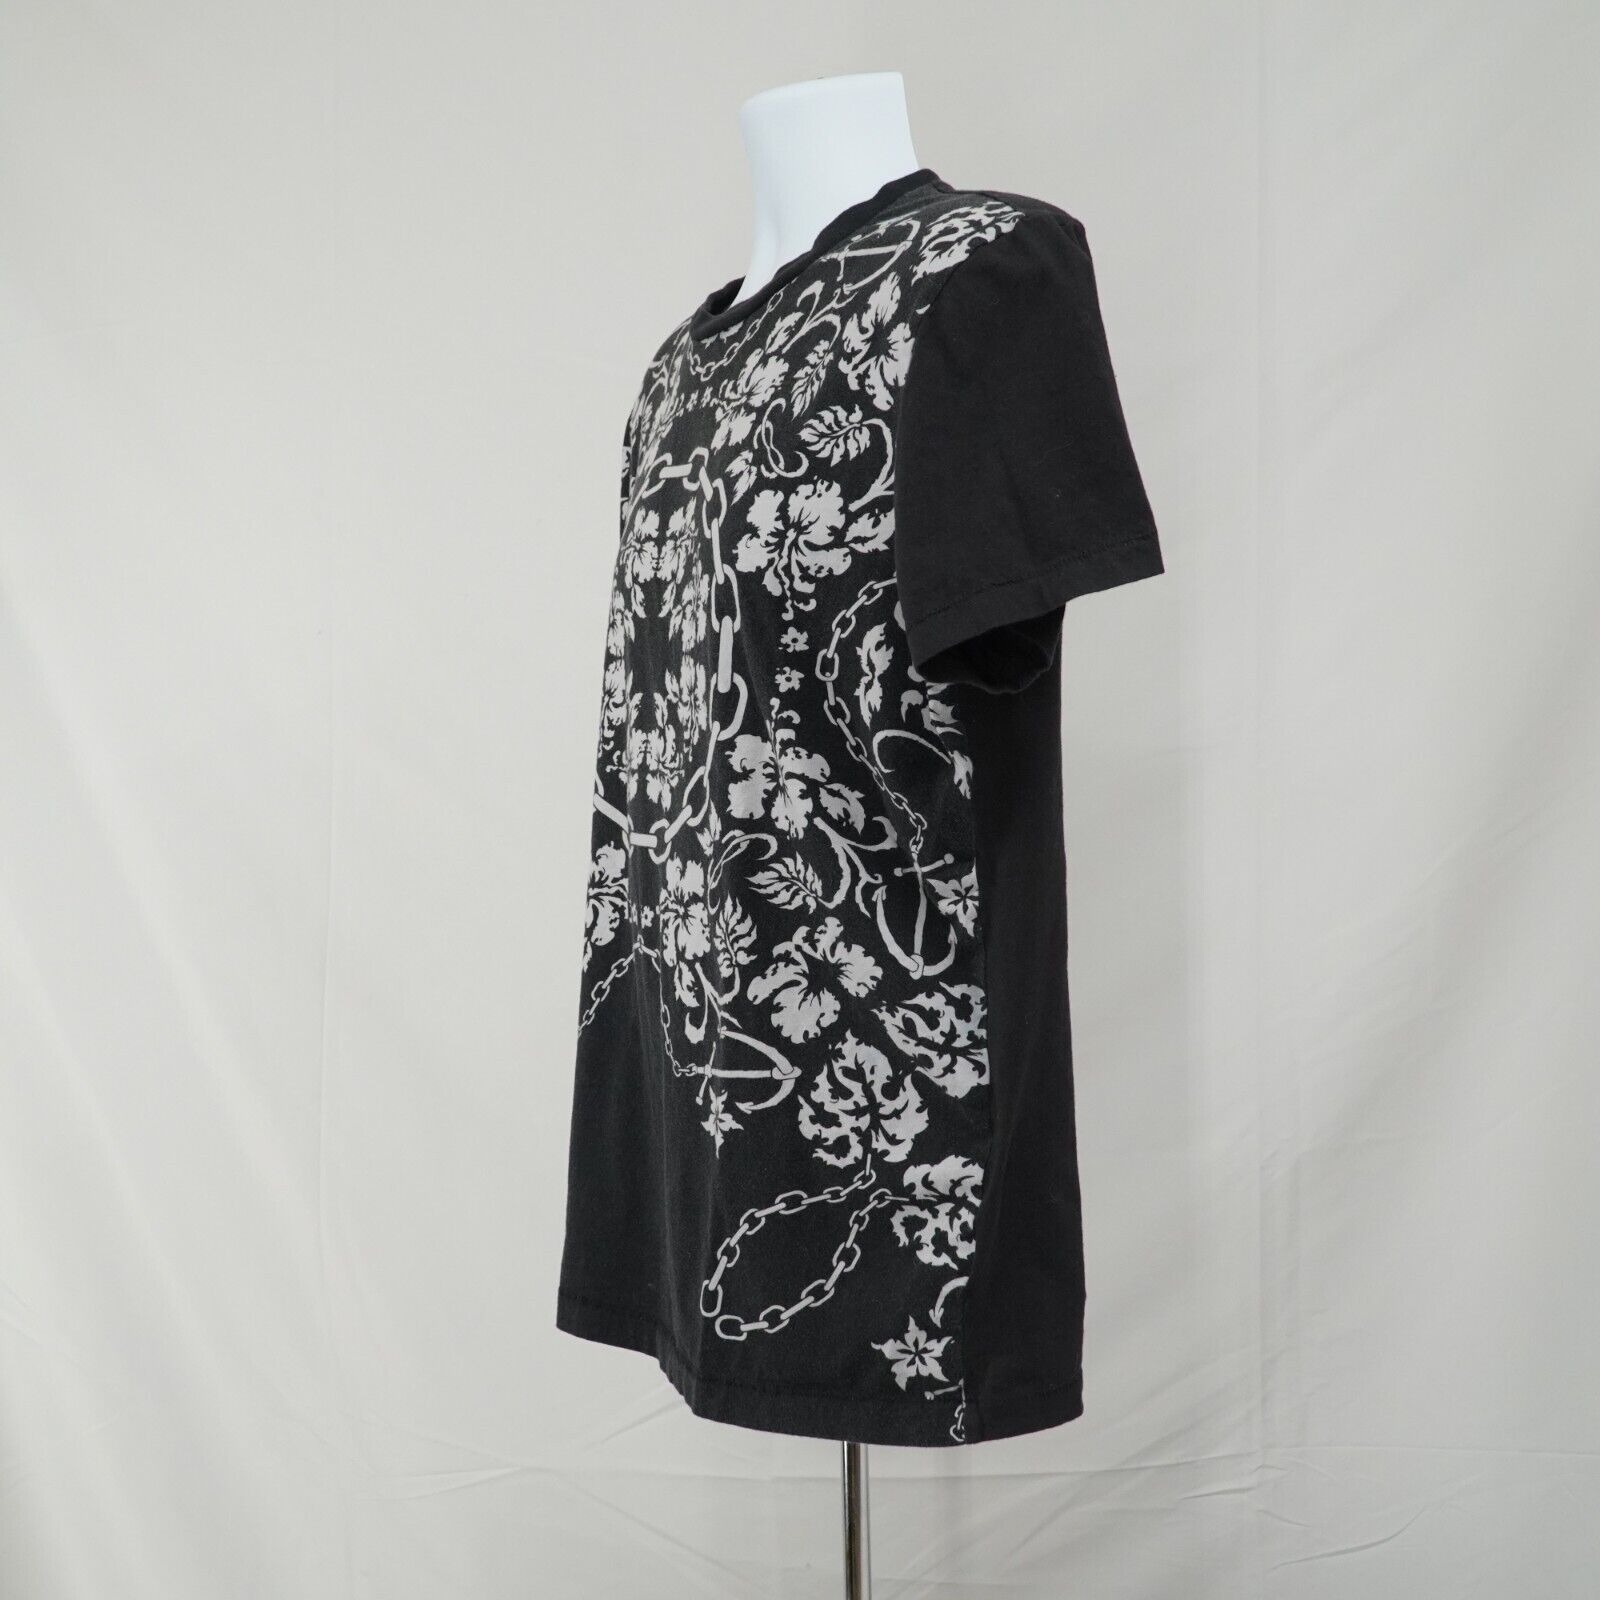 Black White Printed Shirt Floral Chains Anchor Hawaiian Tee - 4